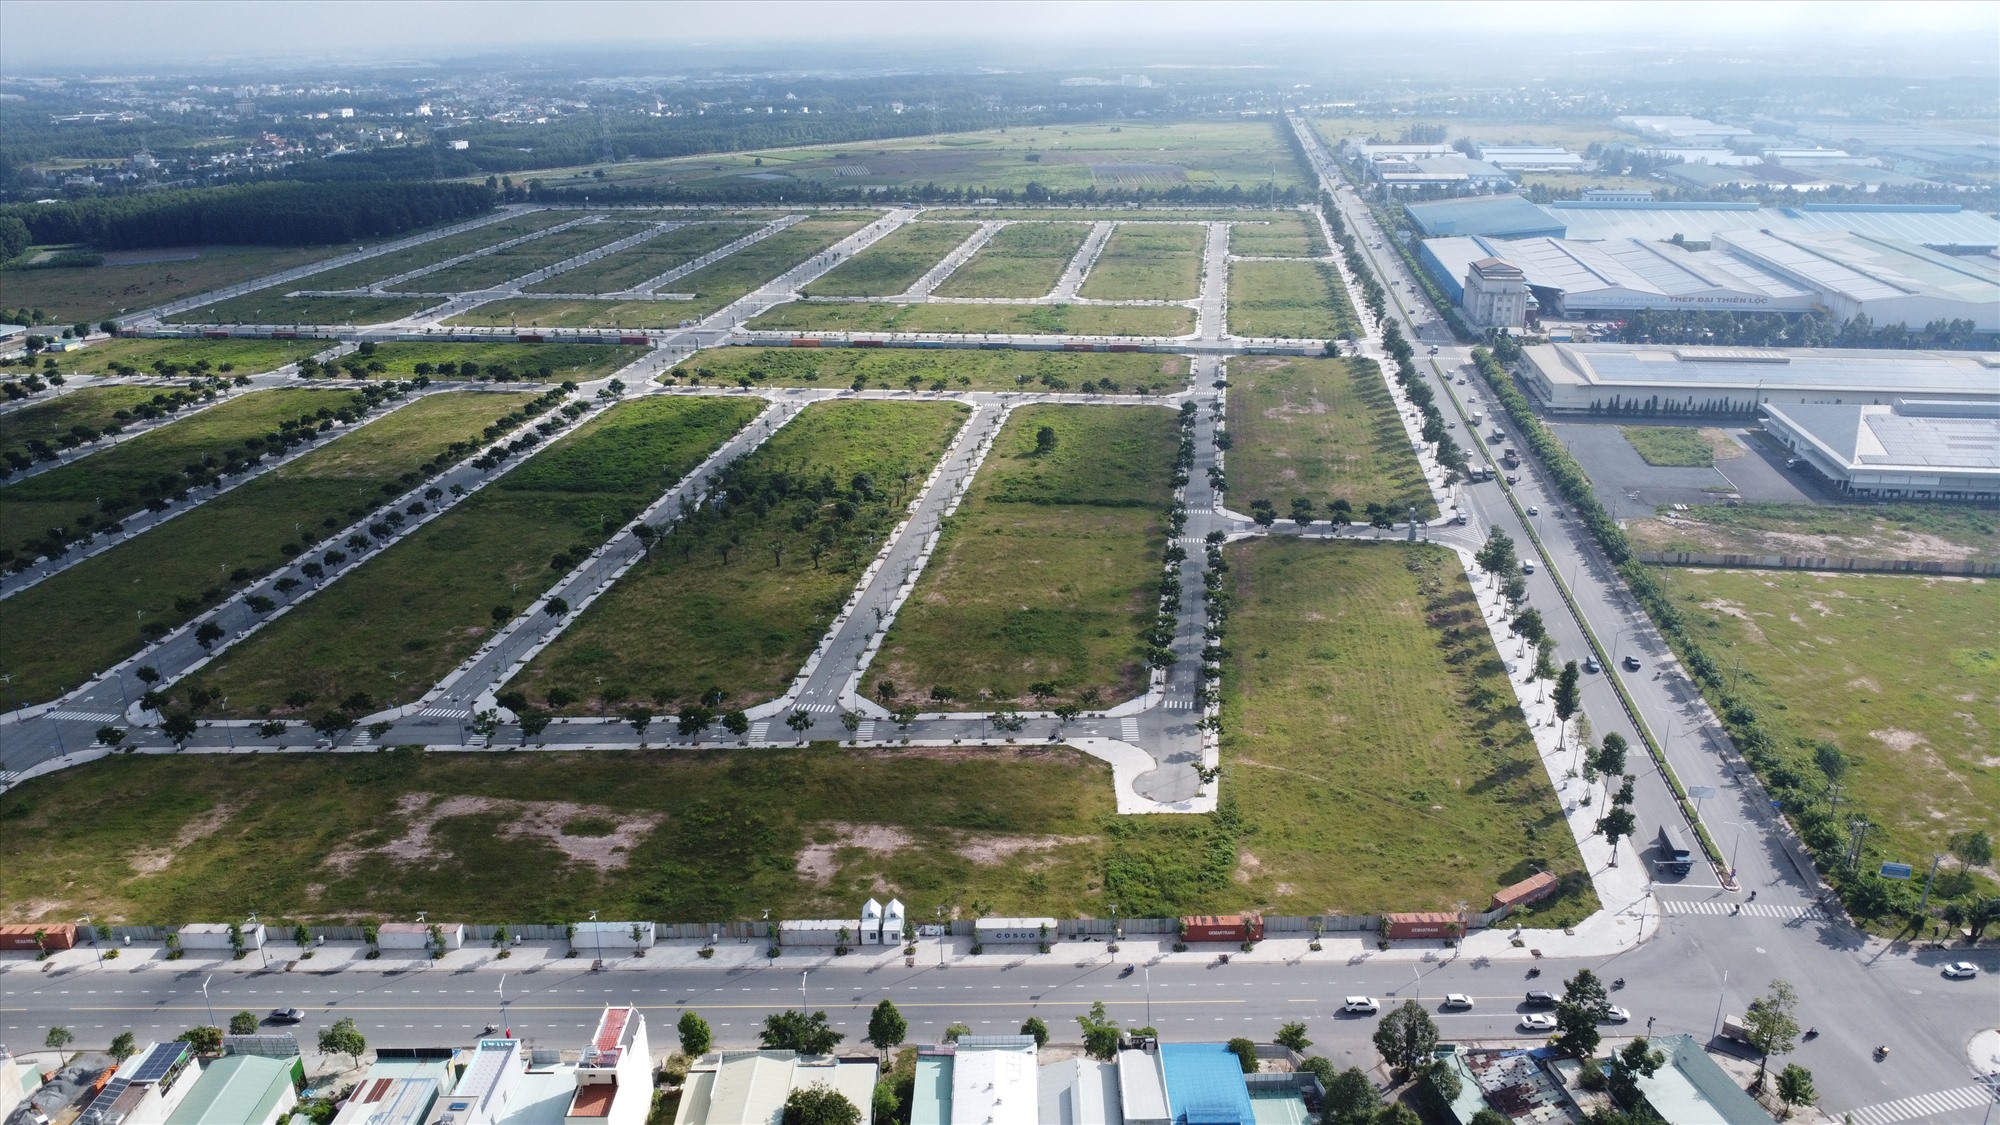  Đây là khu đất ở phường Phú Tân, thành phố Thủ Dầu Một, tỉnh Bình Dương được UBND tỉnh Bình Dương chấp thuận chủ trương cho phép Công ty Cổ phần Đại Nam là chủ đầu tư xây dựng Khu nhà ở Đại Nam từ tháng 10.2018.